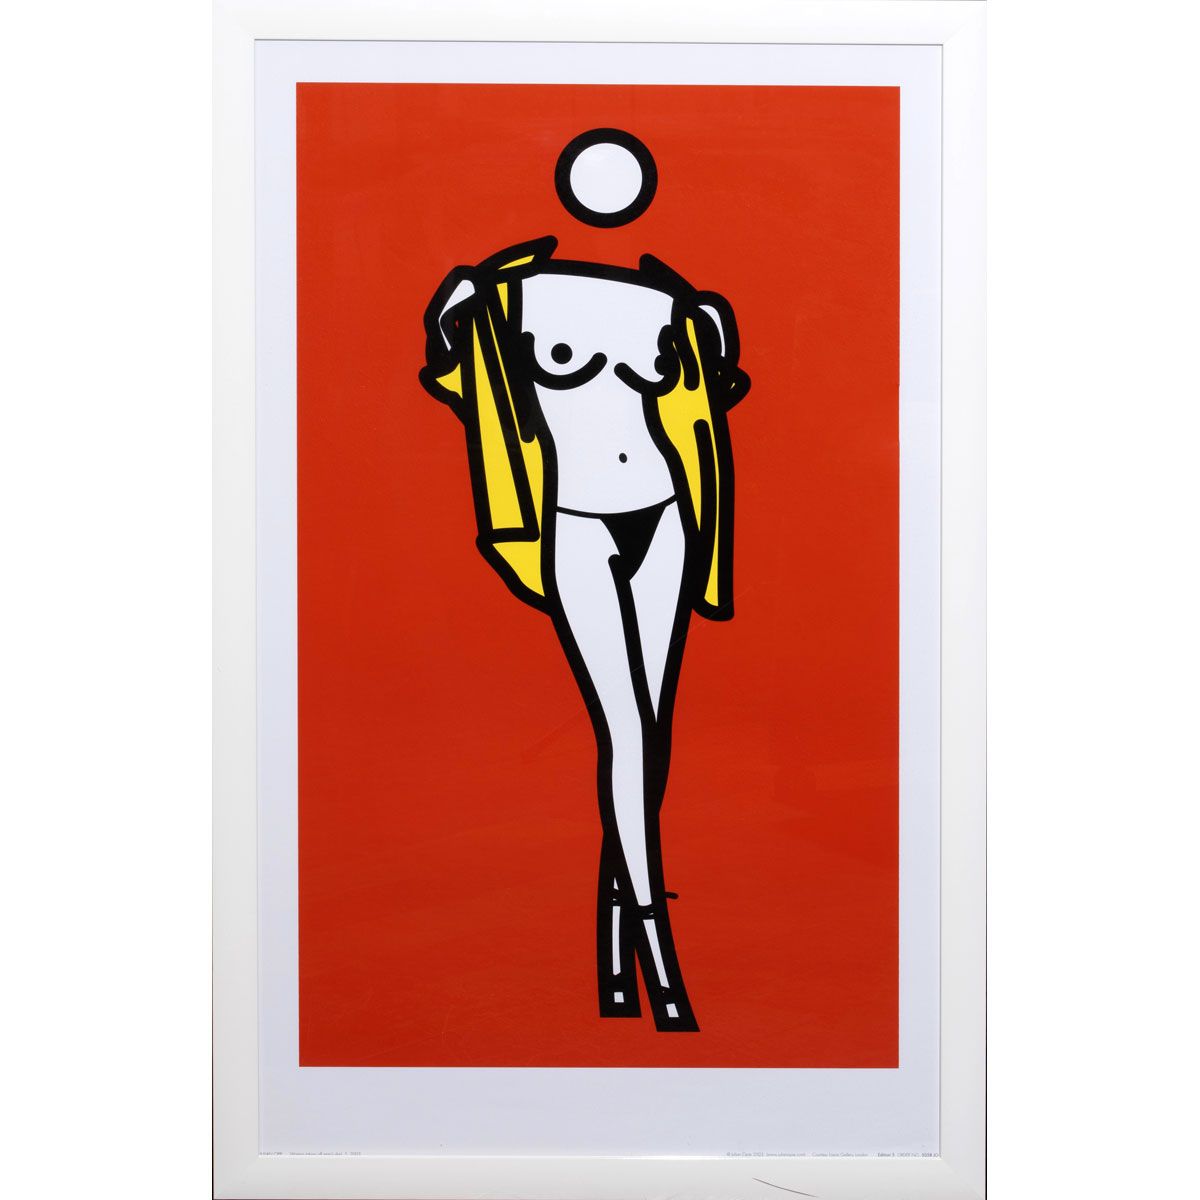 Null 朱利安-欧佩。

女人脱掉男人的衬衫，2003年

丝网印刷

100 x 60厘米